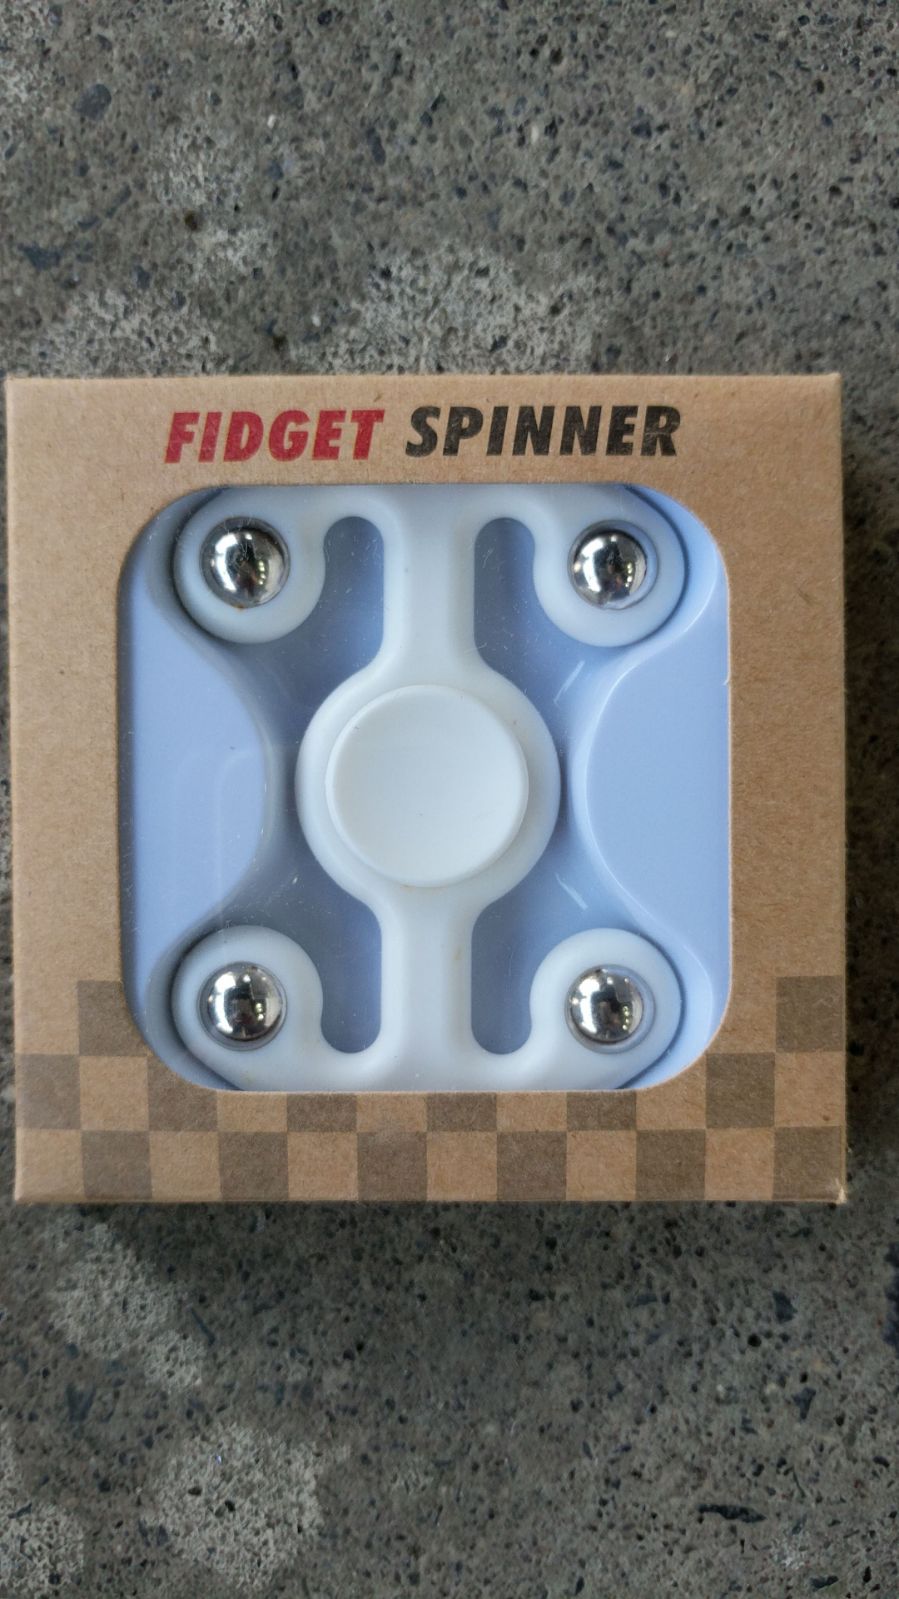 4 Sided Fidgit Fidget Spinner, White